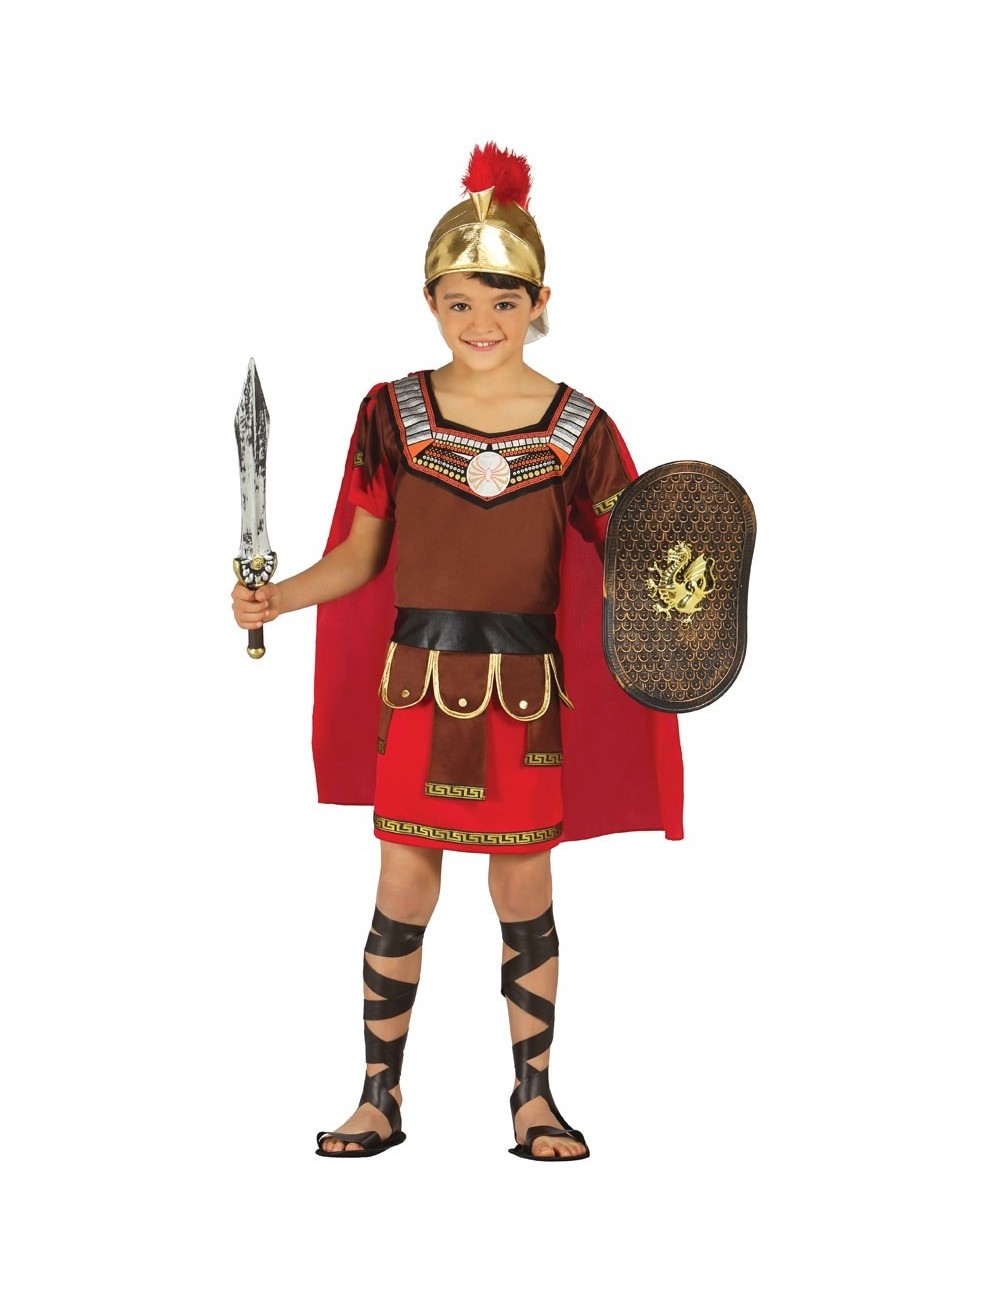 Costum Centurion/ Ofiter roman, copii 3 - 12 ani